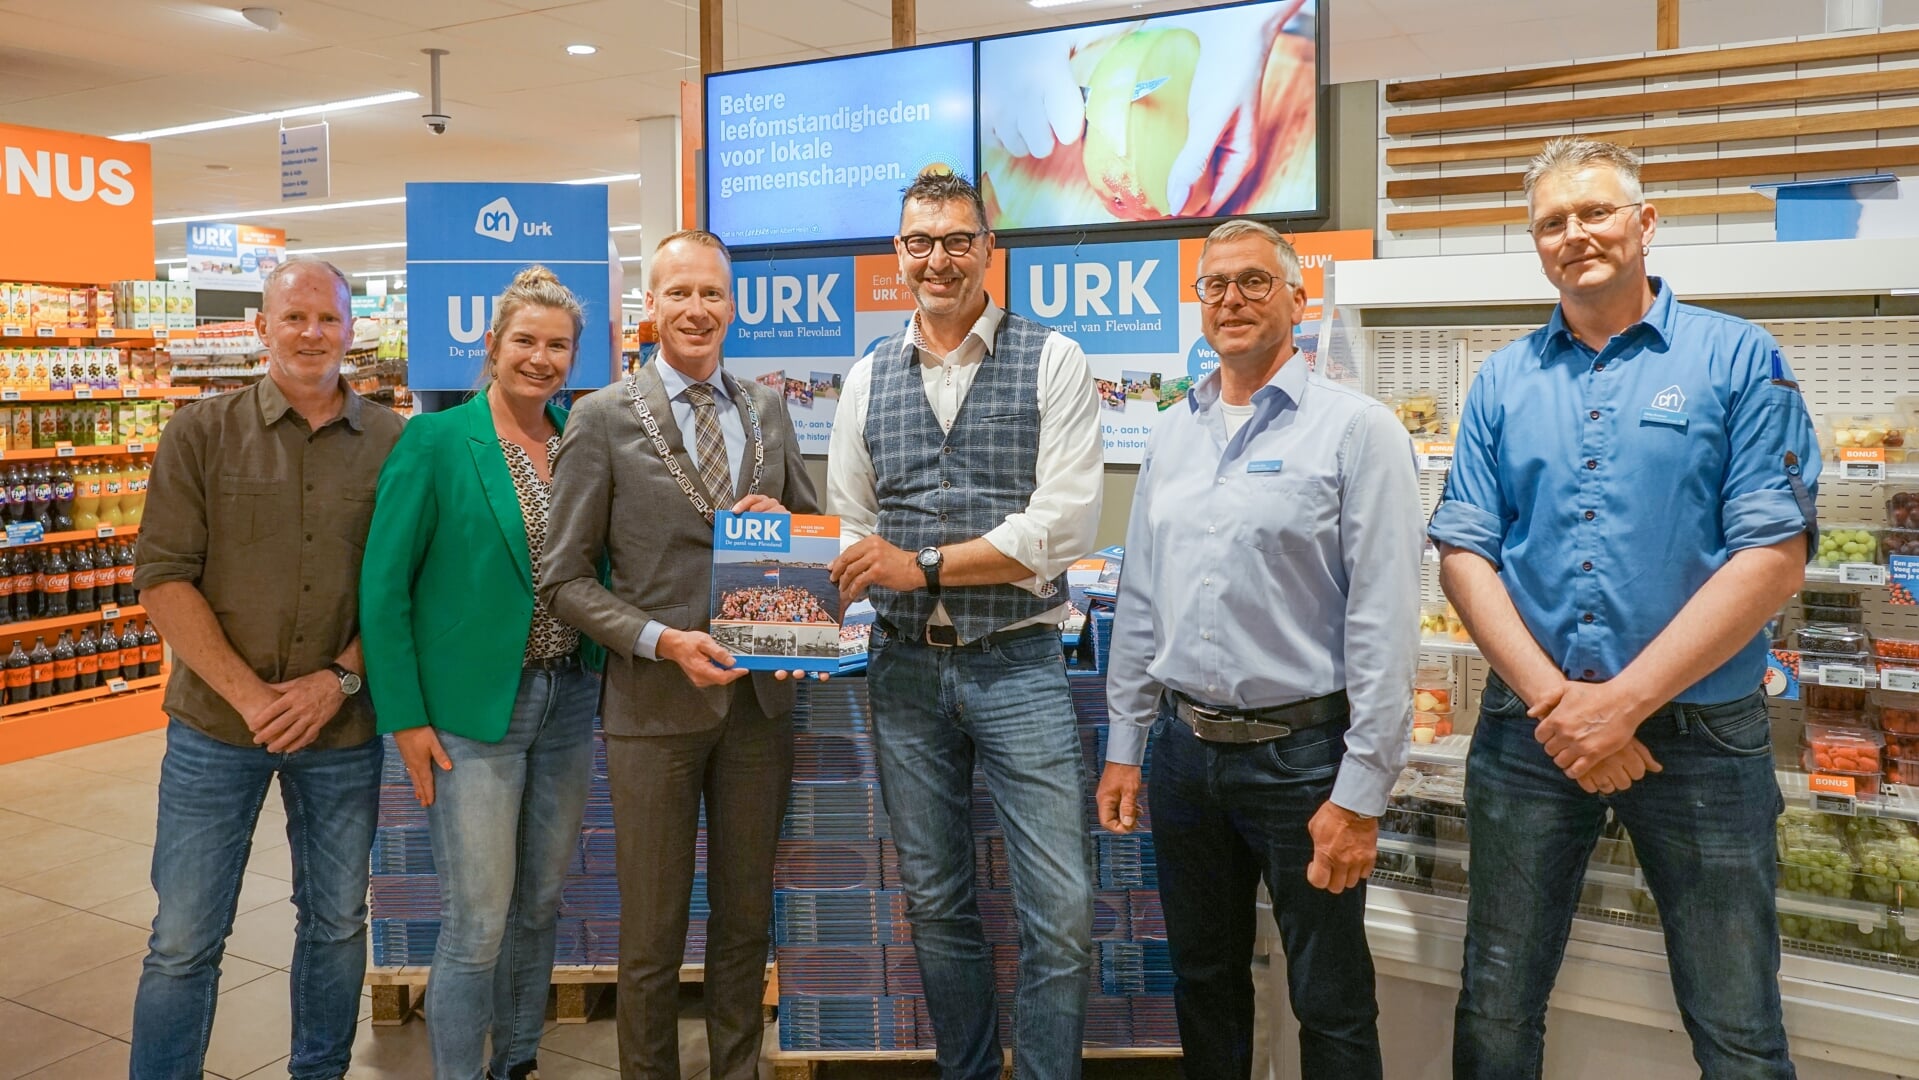 V.l.n.r.: Lub Post (GBU), Emma Wakker (SPIKKER), burgemeester Cees van den Bos, Henk Slump (AH), Harold Kats (AH) en Okke Kramer (AH).